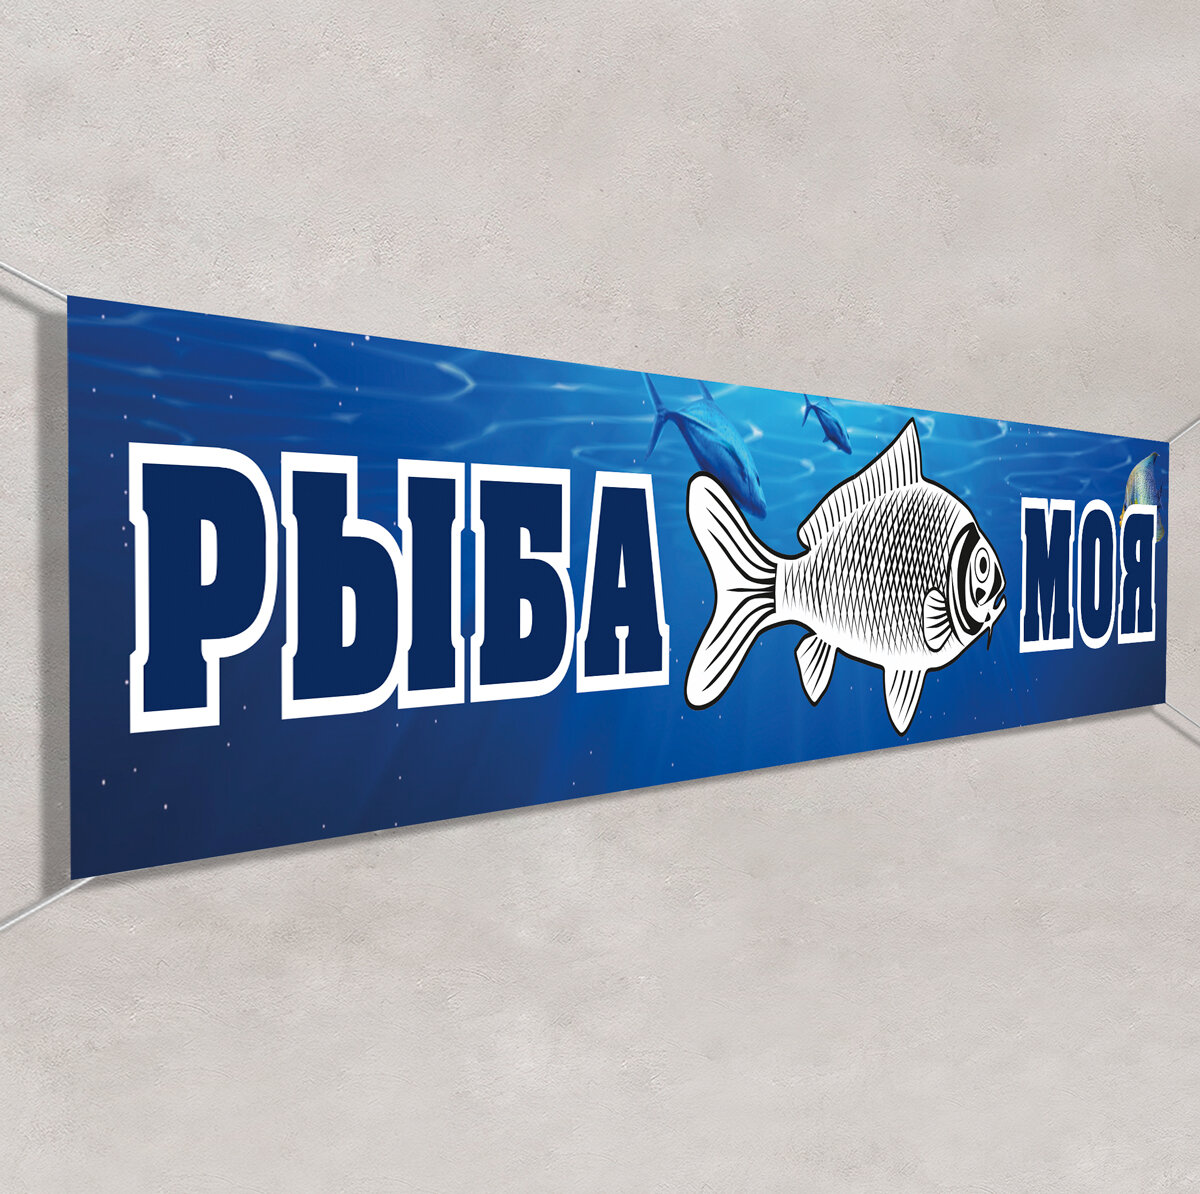 Баннер "Рыба" / Вывеска растяжка для рекламы Рыбной лавки / 2x0.4 м.